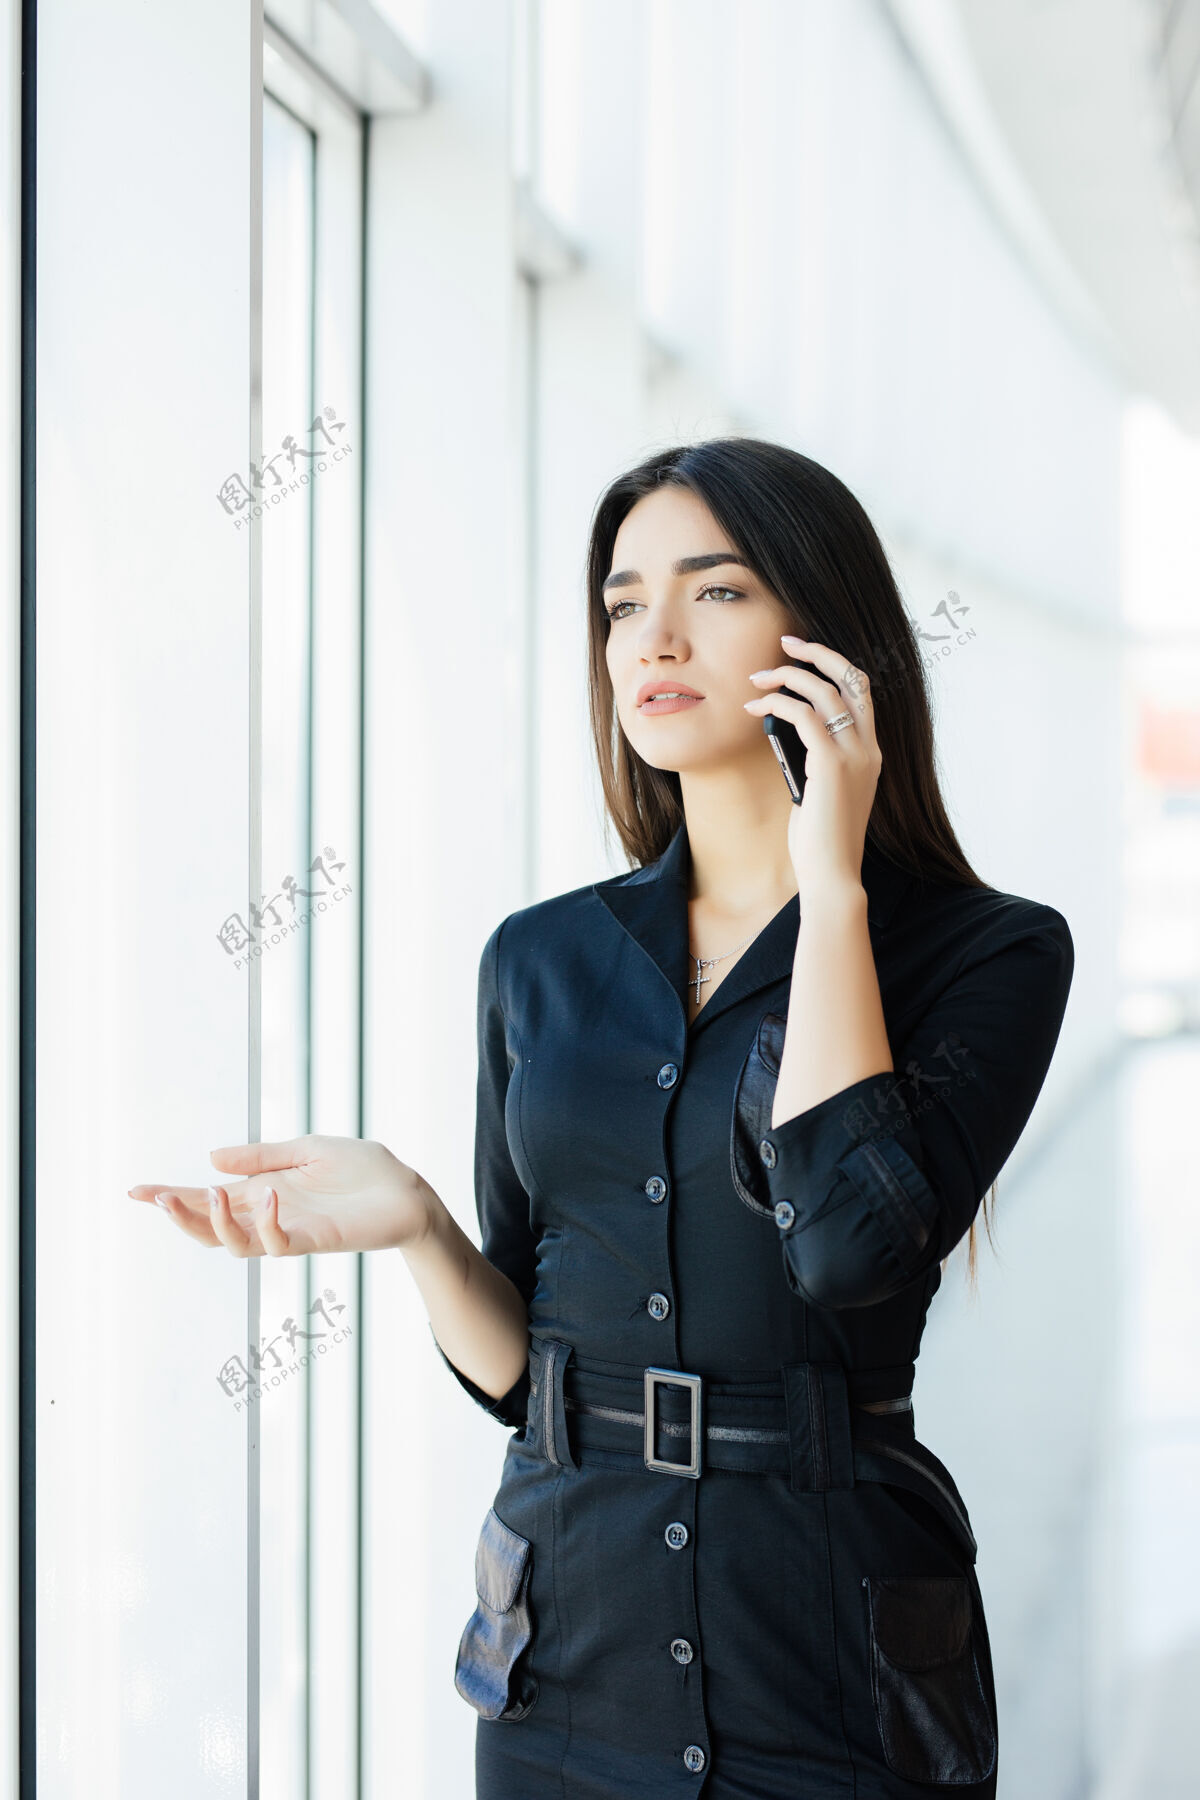 观看后视图：年轻工人用手机说话 望着窗外女员工有业务电话 晚上在工作场所忙碌成人说话智能